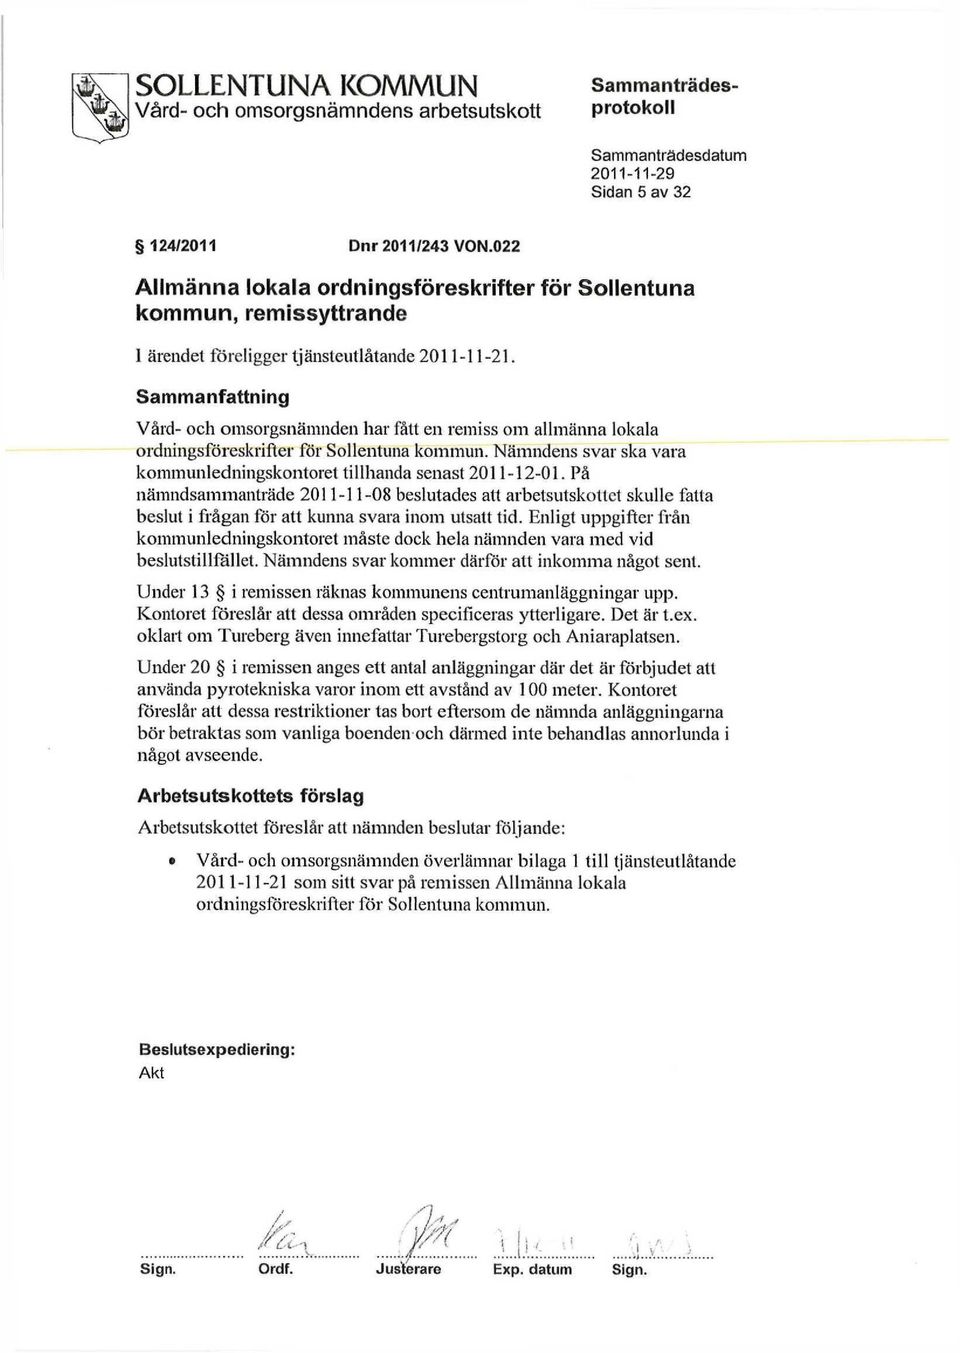 Sammanfattning Vård- och omsorgsnämnden har fått en remiss om allmänna lokala ordningsföreskrifter för Sollentuna kommun. Nämndens svar ska vara kommunledningskontoret tillhanda senast 2011-12-01.